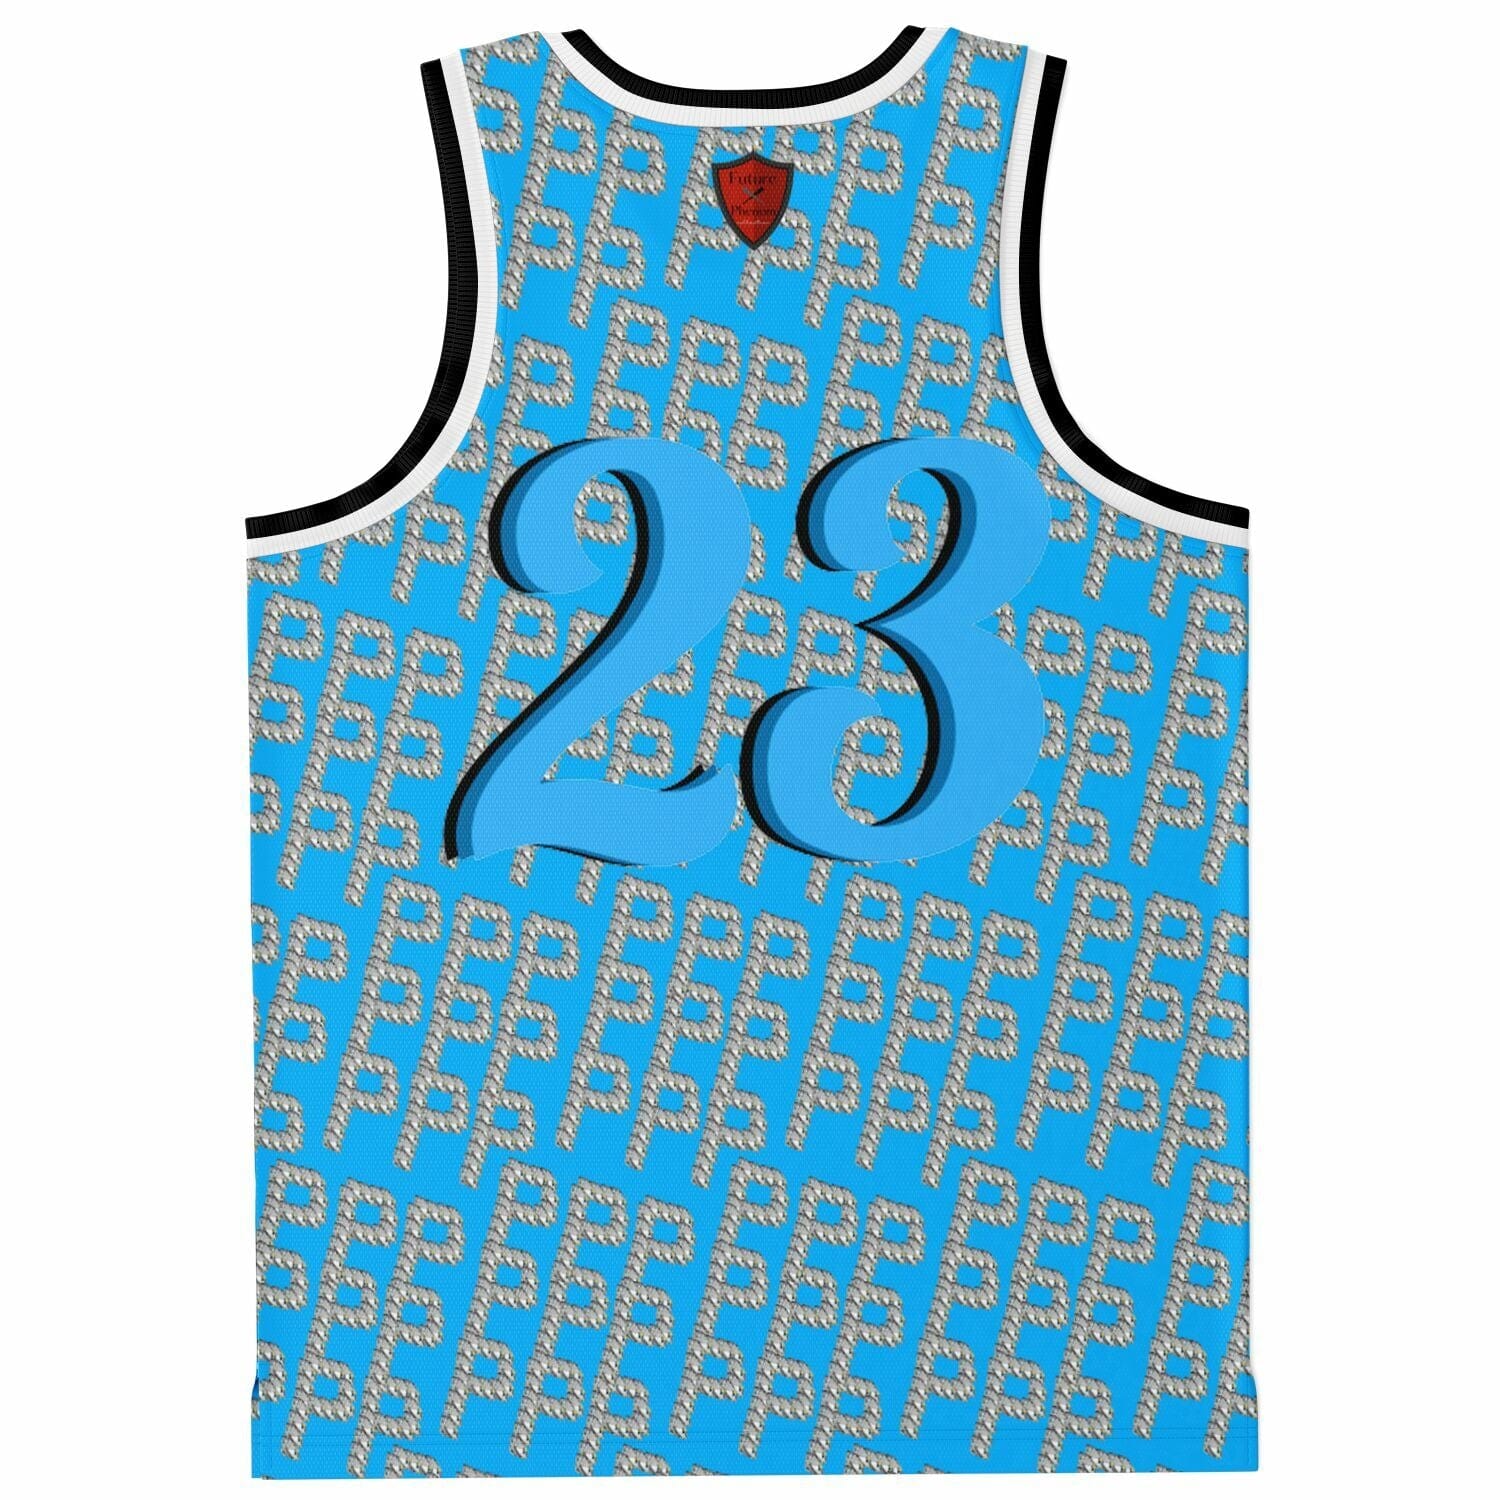 Basketball Jersey Rib - AOP Blue ice phenomenon No. 23 jersey